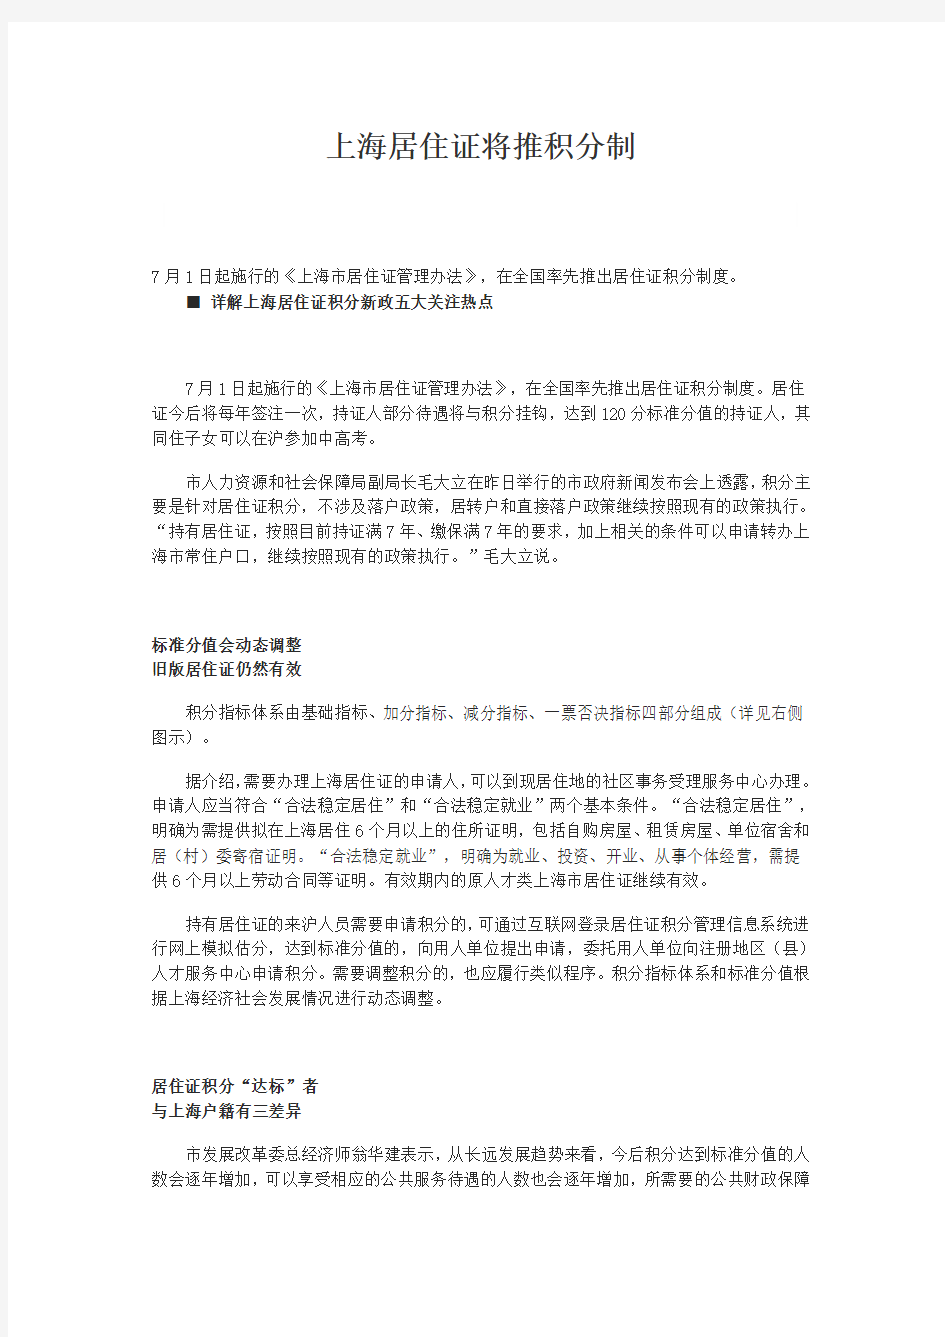 上海居住证2013年7月1日新政策_积分制